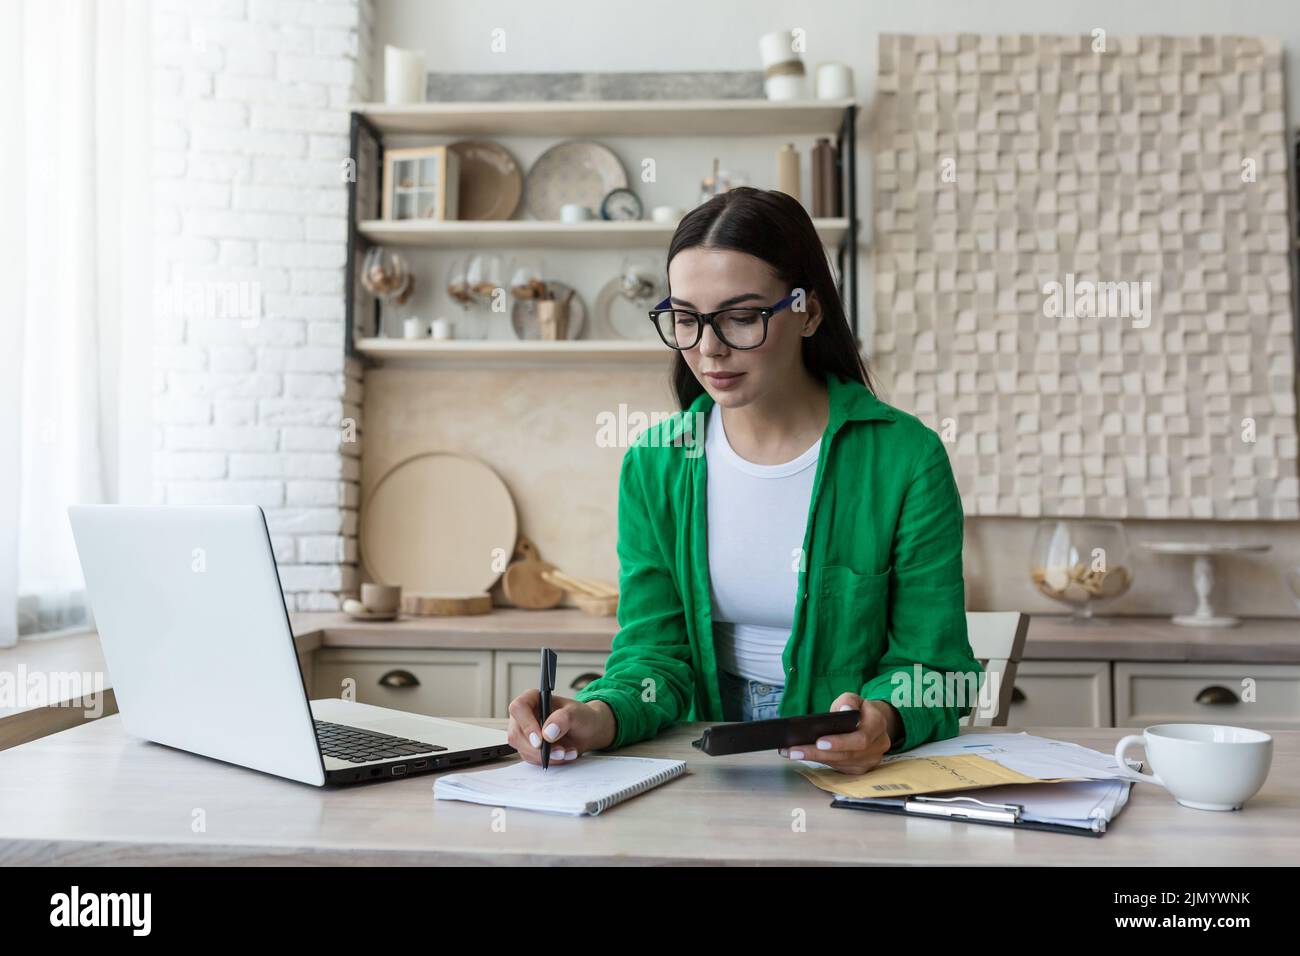 Hausbuchhaltung.Eine junge Frau zählt ihr Einkommen und expenses.checks das Haushaltsbudget. In einer Brille und einem grünen Hemd, sitzt zu Hause mit einem Laptop, einem Rechner und schreibt in einem Notebook, berechnet. Stockfoto